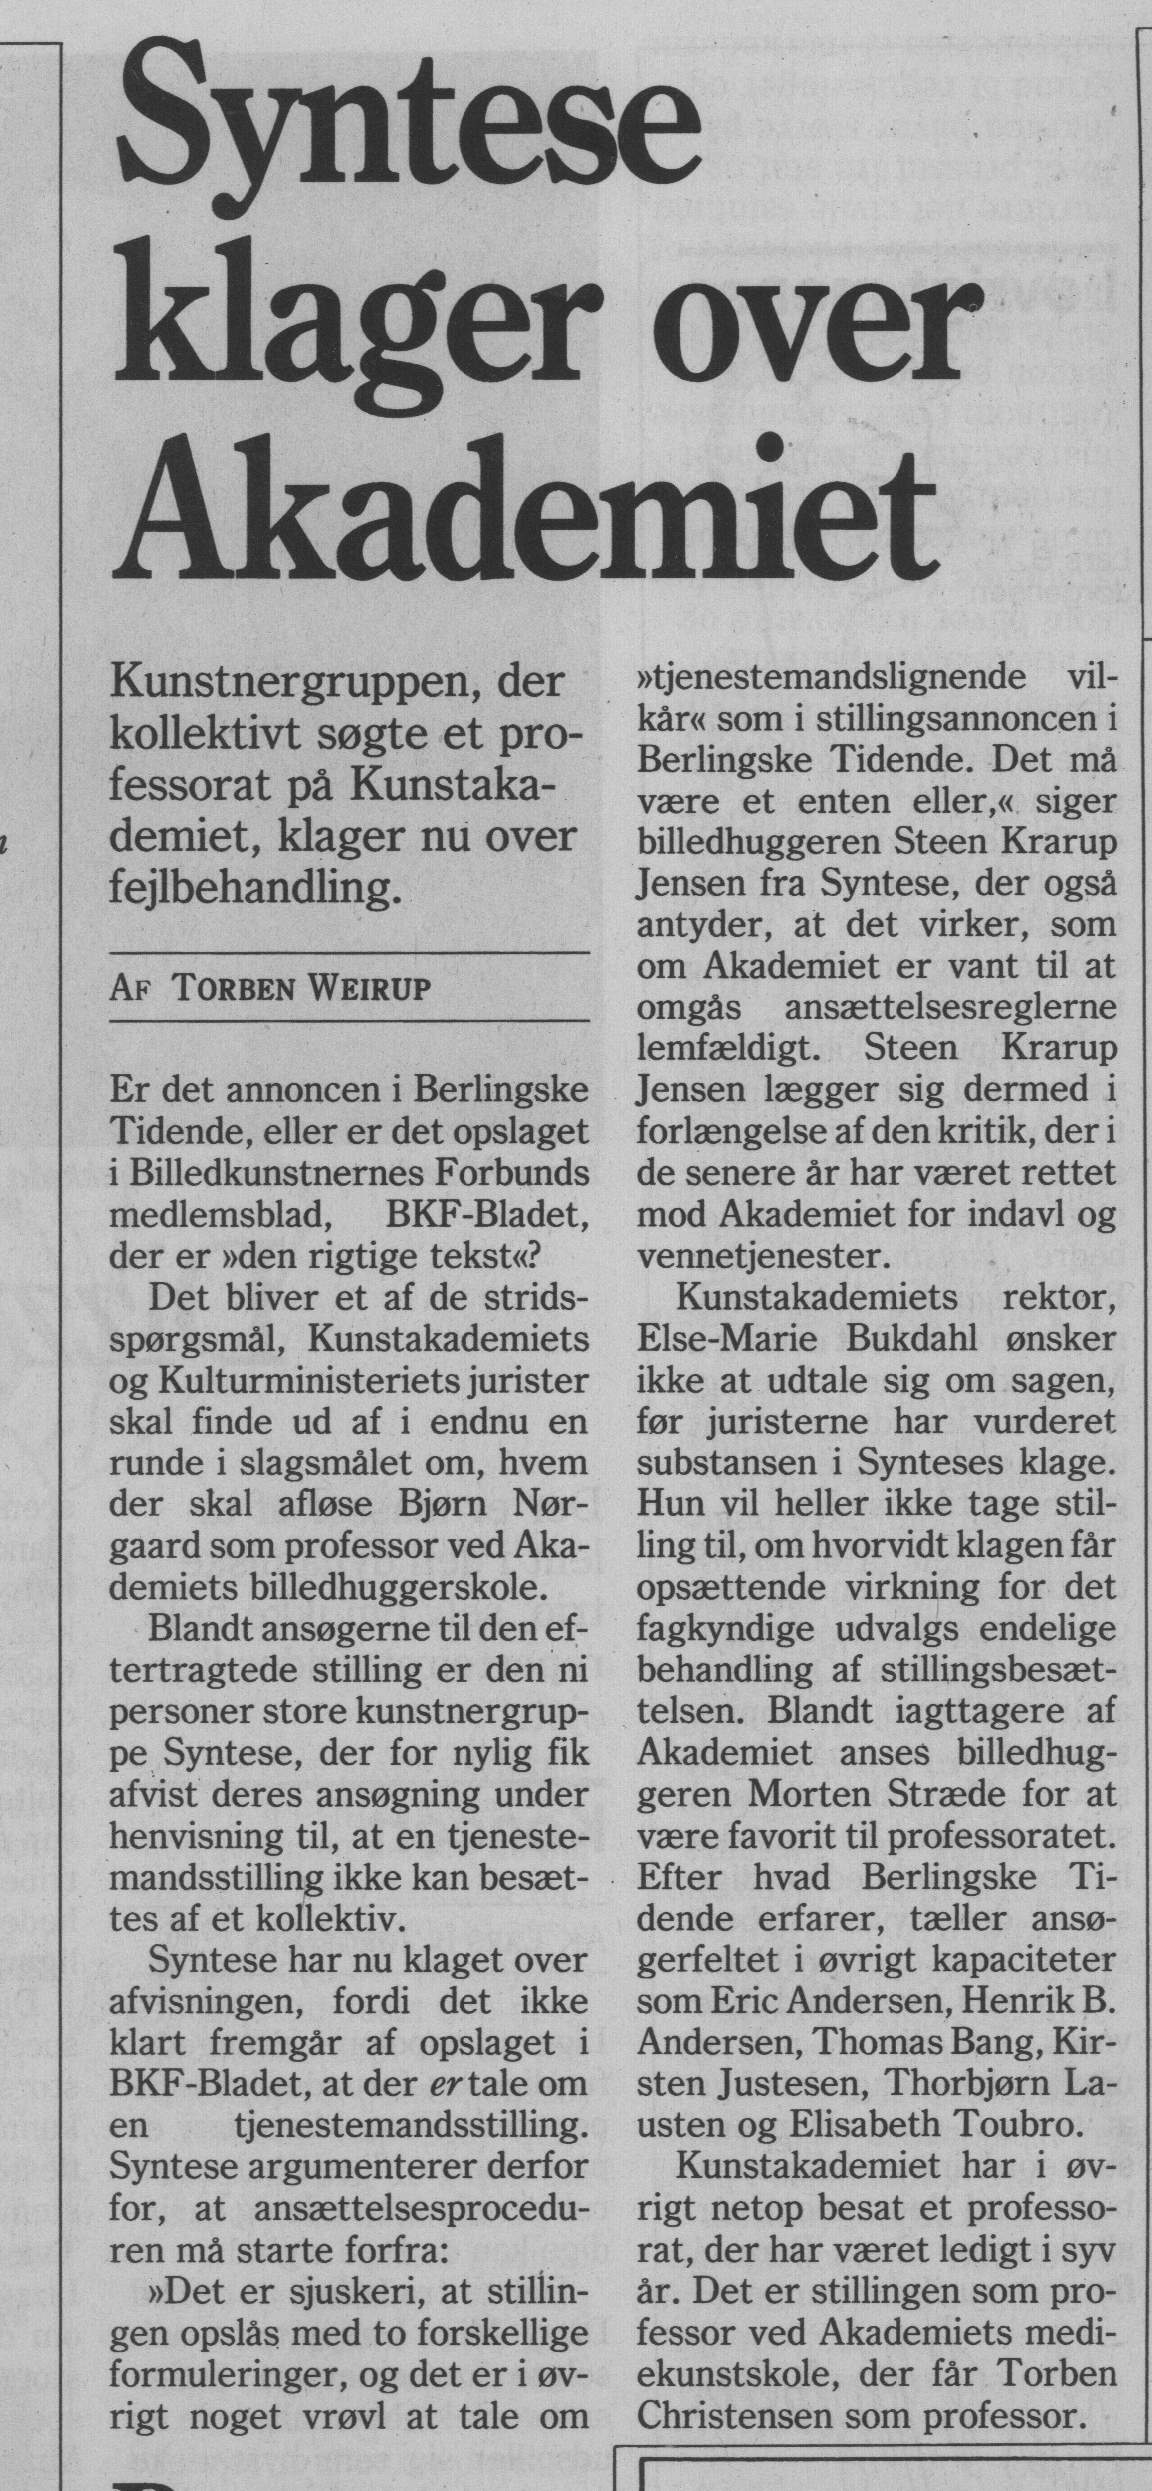 Syntese klager over Akademiet. Omtale (Kollektivt professorat 1994). Torben Wierup. Berlingske Tidende.